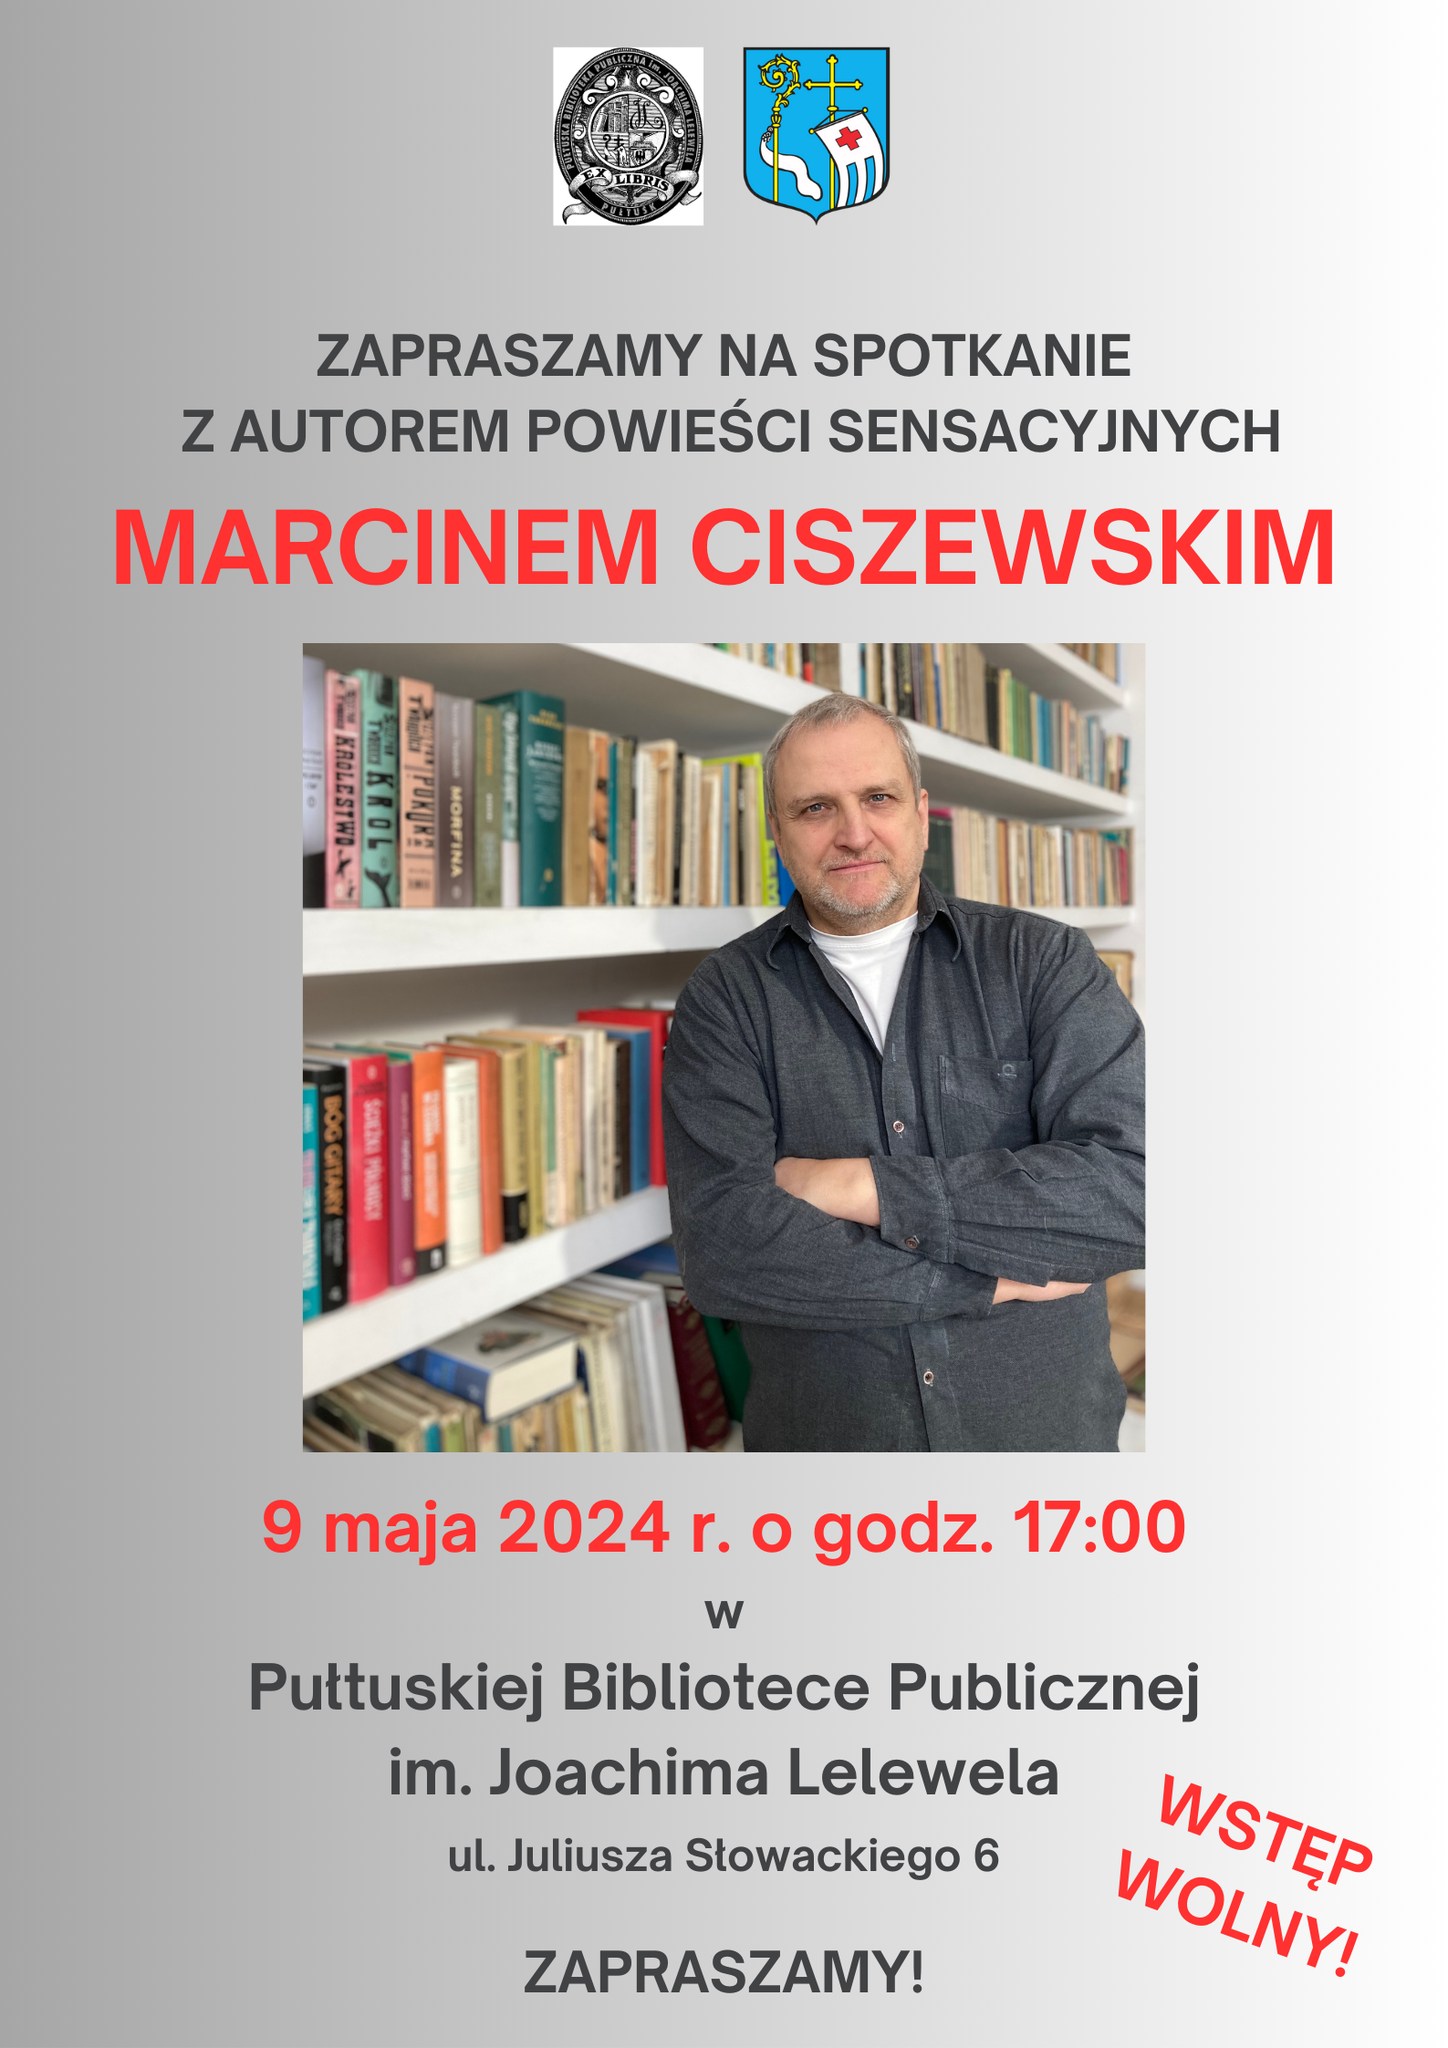 Spotkanie z autorem powieści sensacyjnych Marcinem Ciszewskim – zaproszenie